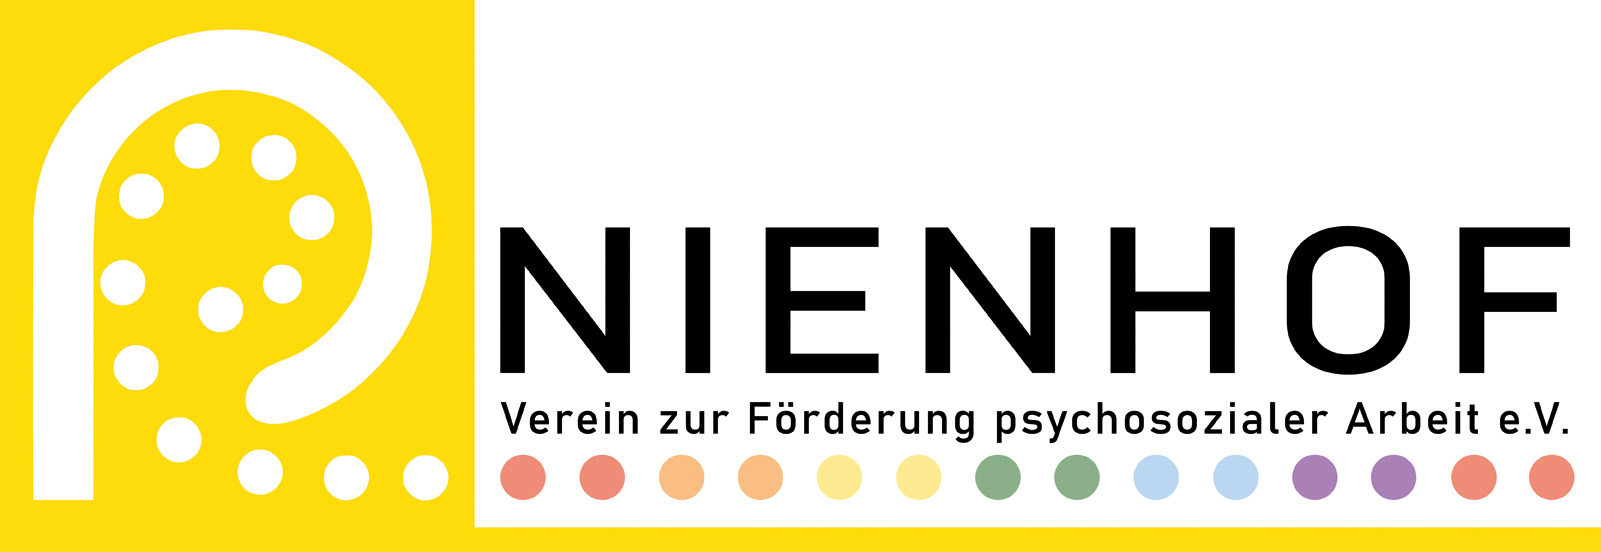 Logo des Nienhof mit gelbem Hintergrund und weißem Strich und weißen Punkten.